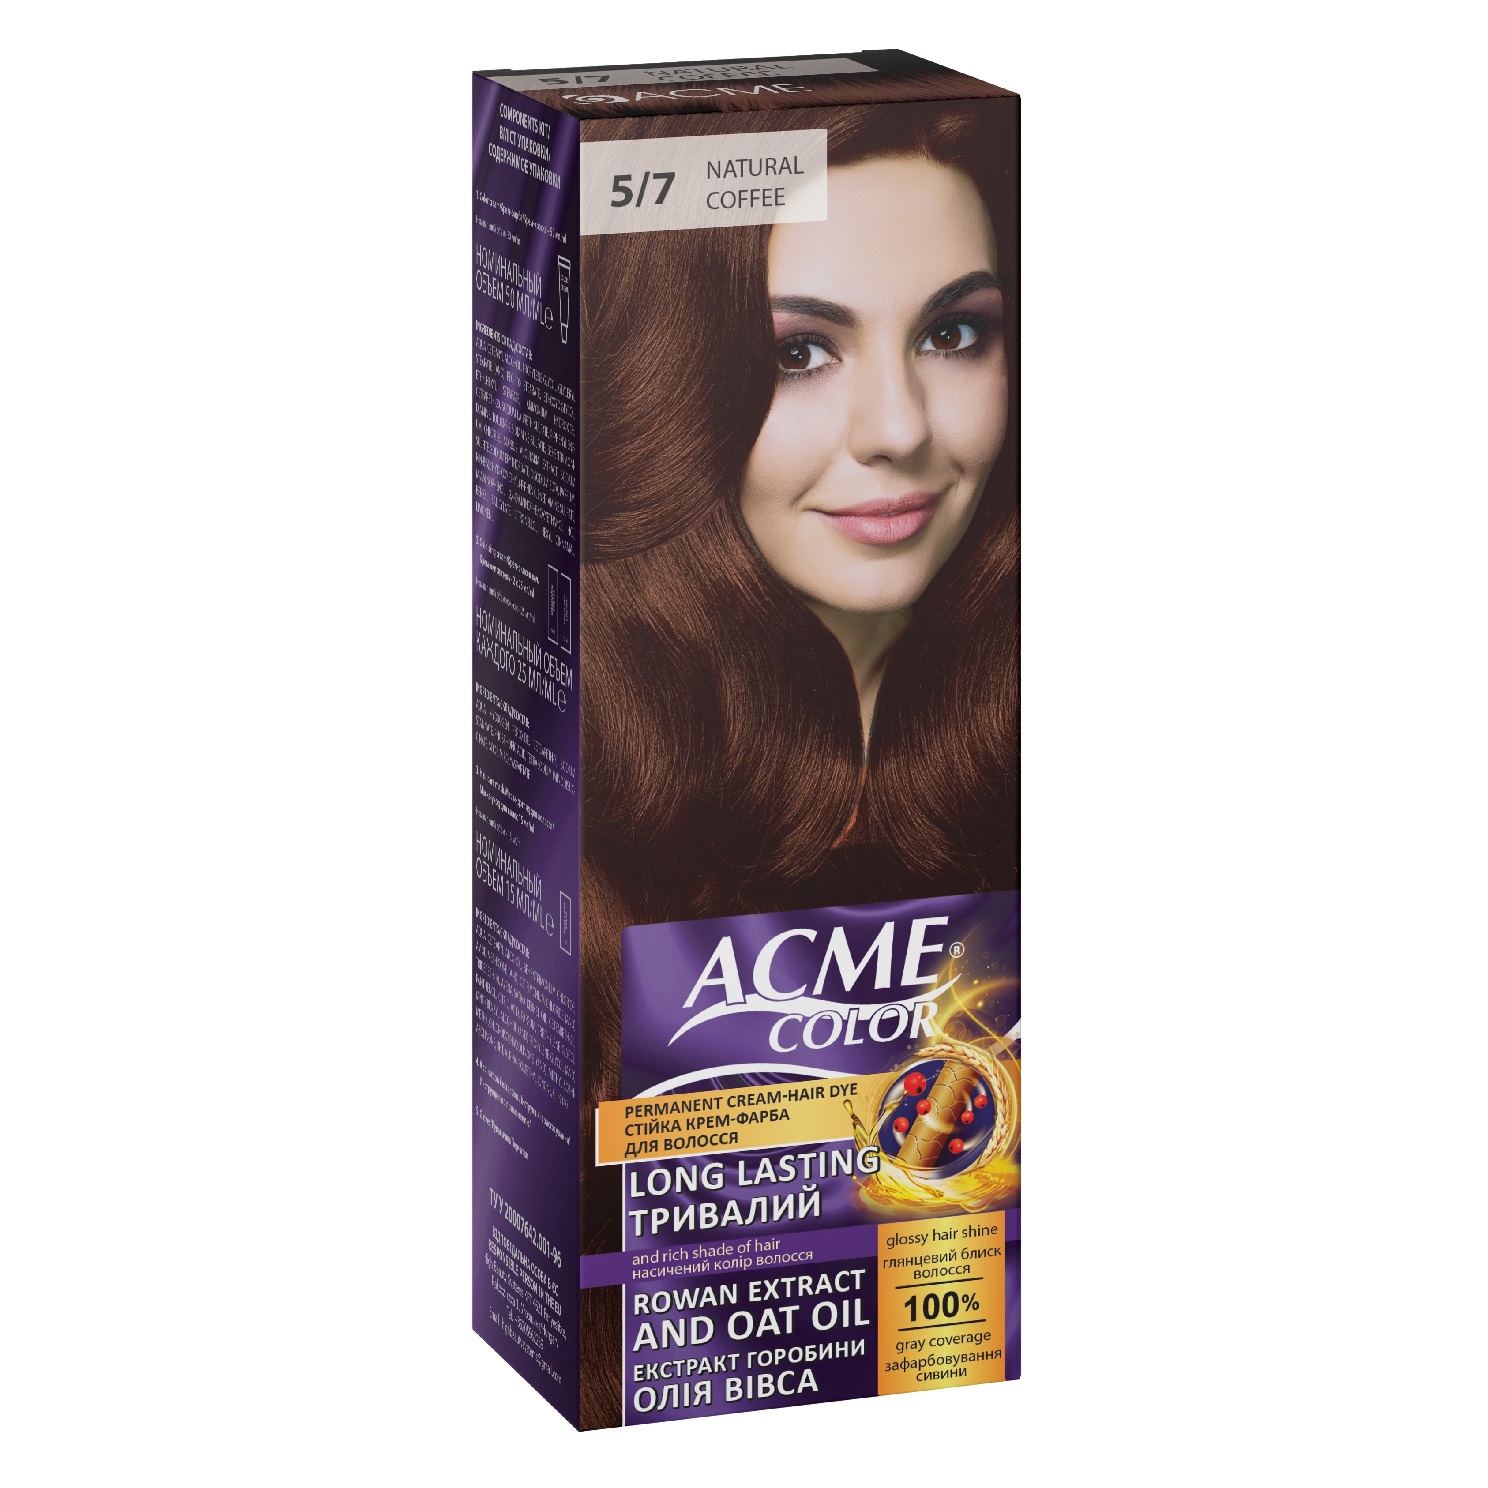 Крем-краска для волос Acme Color EXP, оттенок 5/7 (Натуральный кофе), 115 мл - фото 1